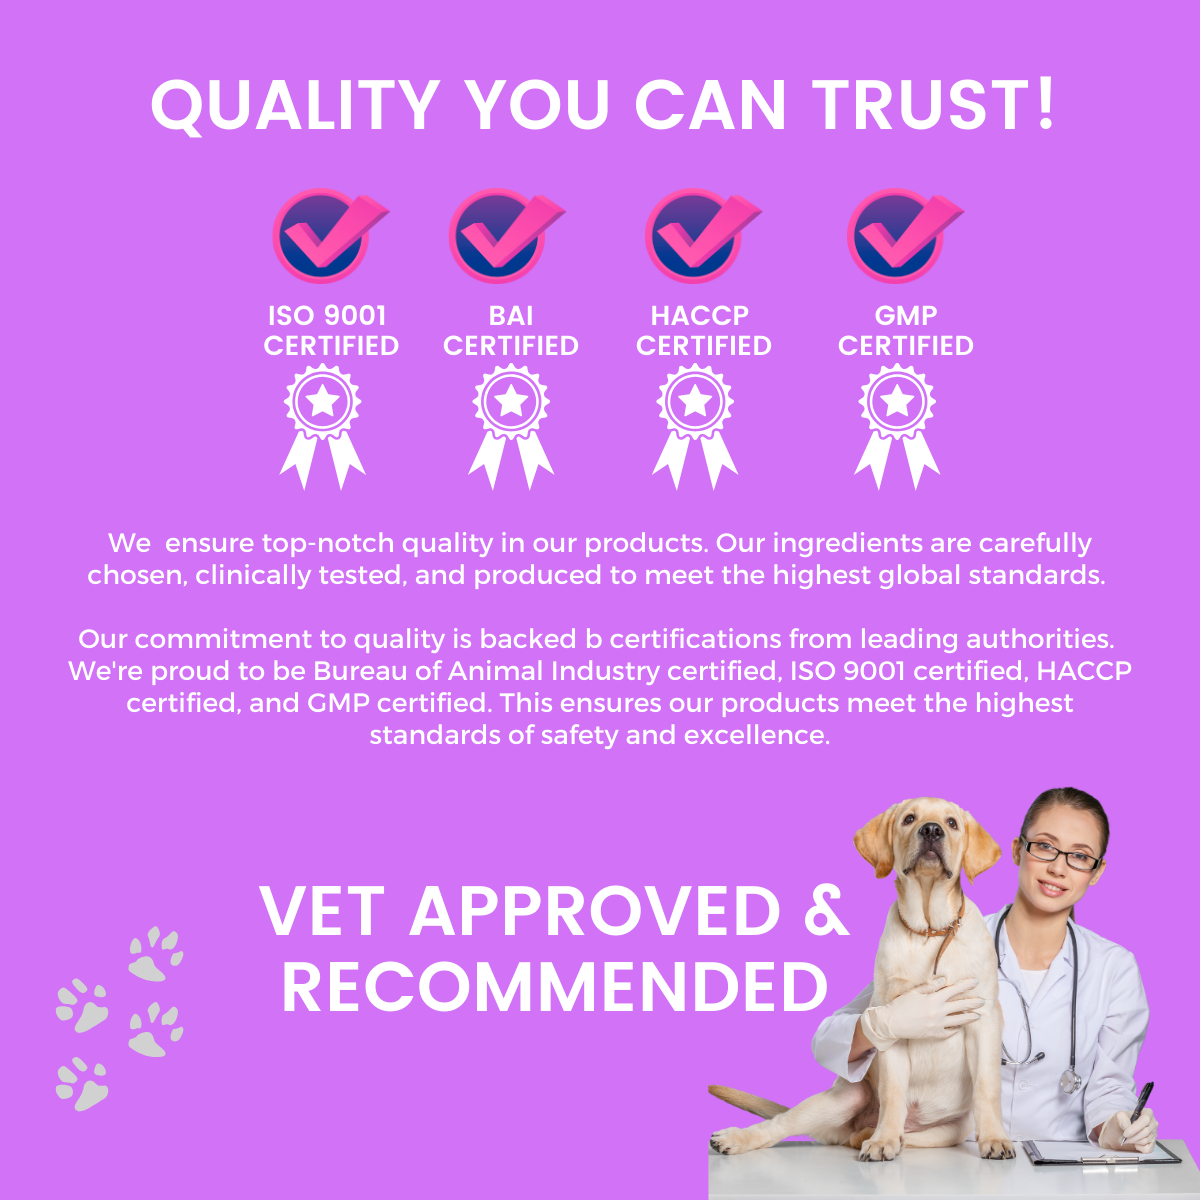 Pet Logic Probiotic Digestive Health + Strong Bones & Joints Pet Supplements